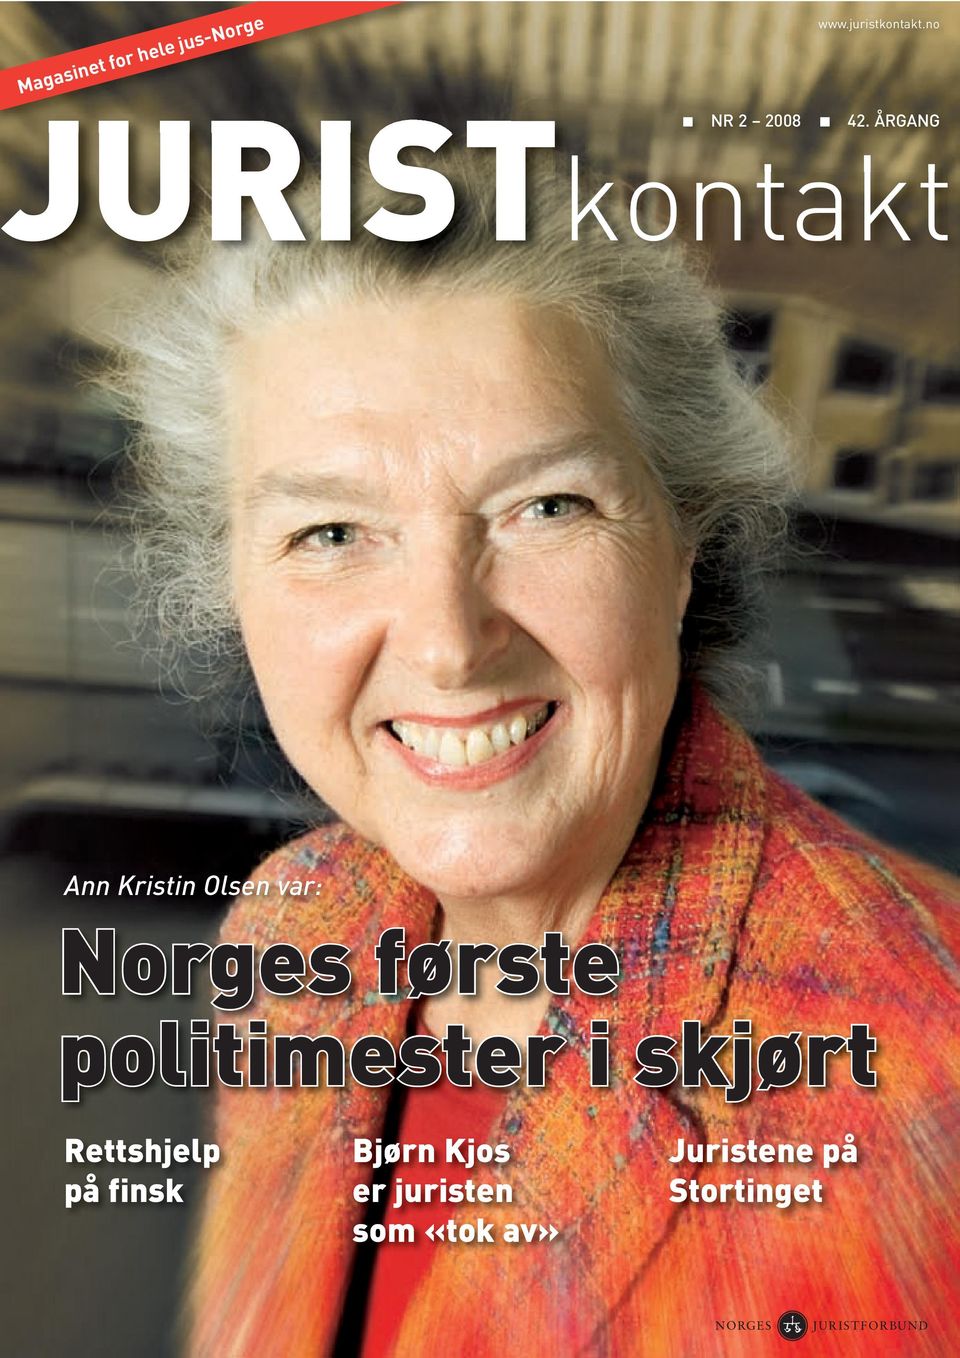 ÅRGANG JURISTkontakt Ann Kristin Olsen var: Norges første